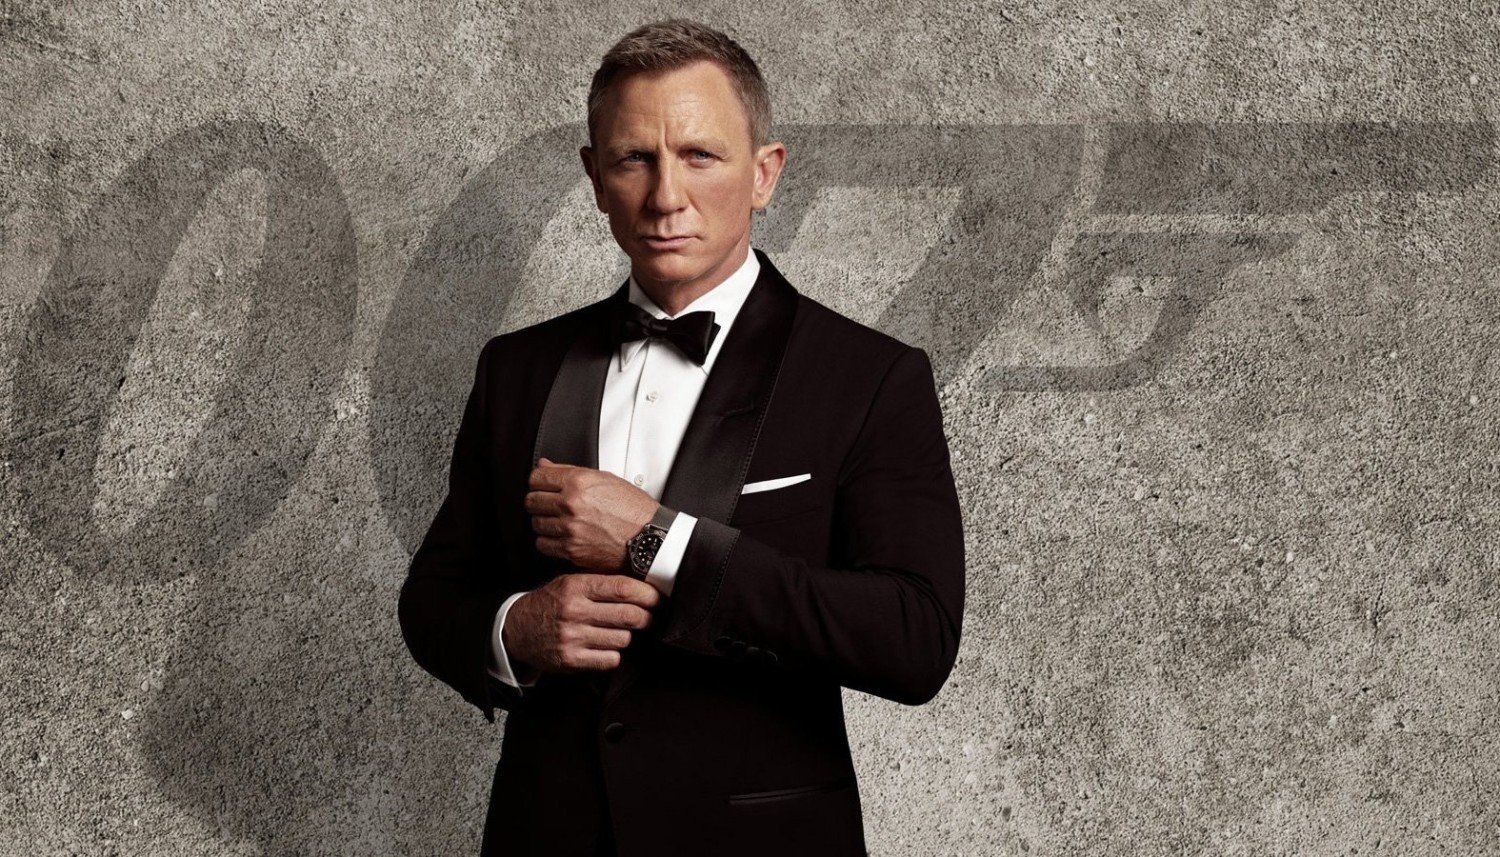 James Bond key art